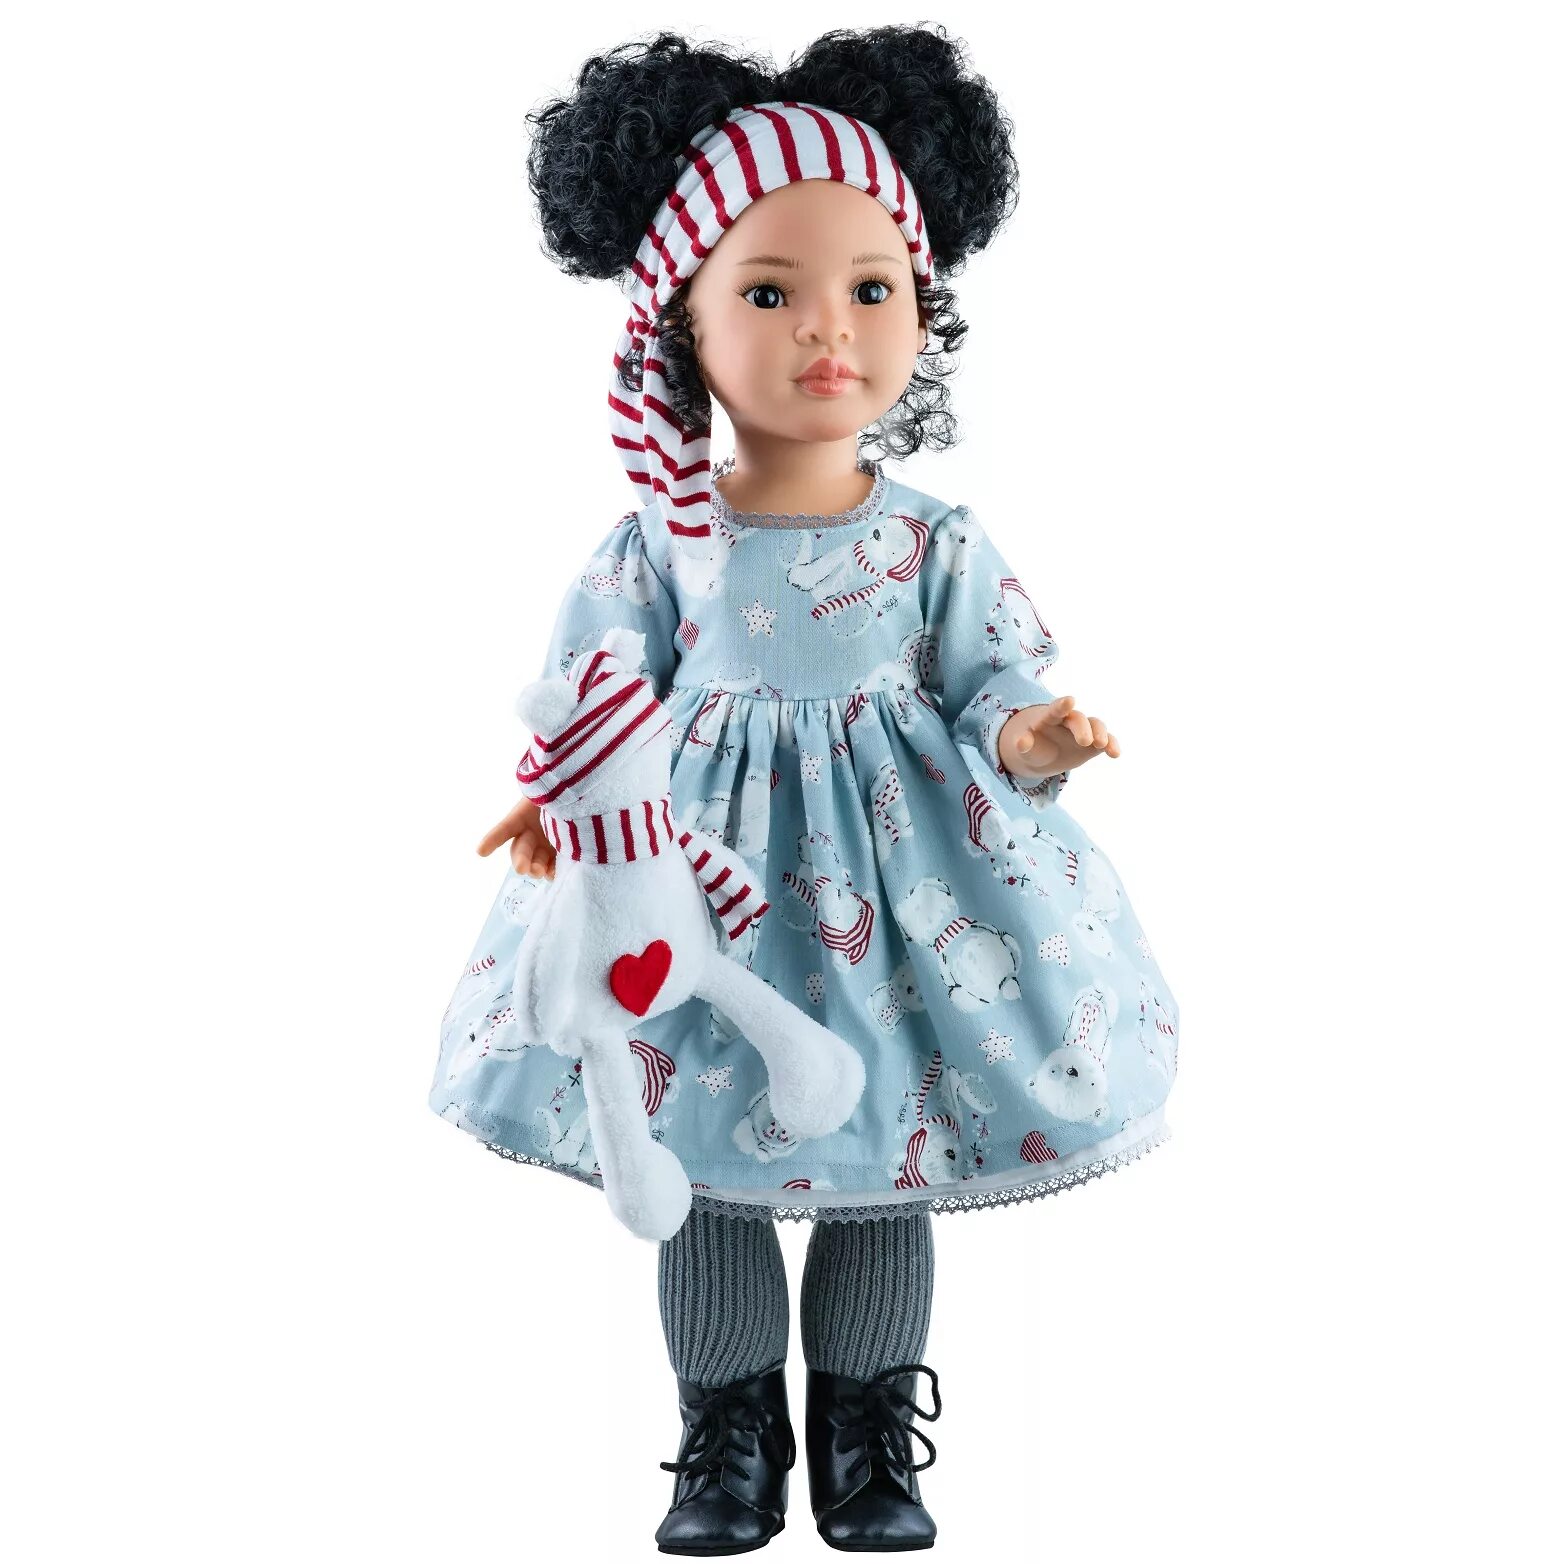 Куклы 60 см купить. Кукла Паола Рейна. Кукла Мэй Паола Рейна. Кукла Paola Reina Альма шарнирная 60 см.